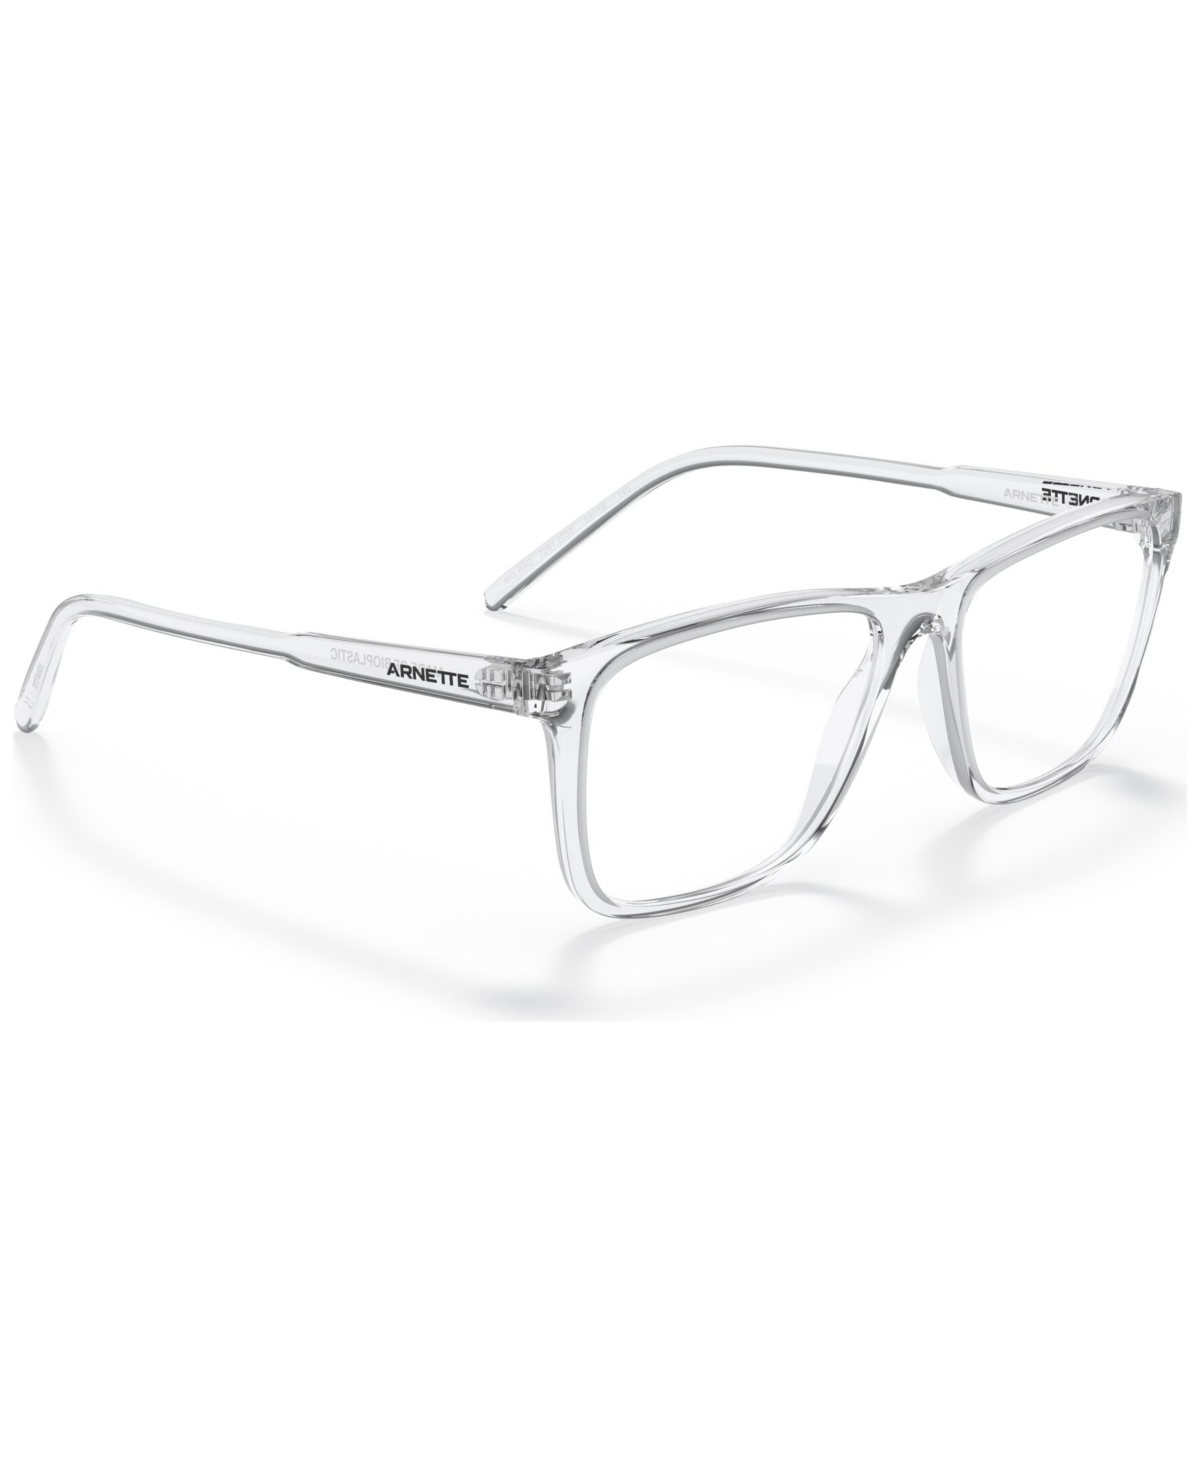 Men's Big Bad Eyeglasses, AN7201 - Transparent Teal